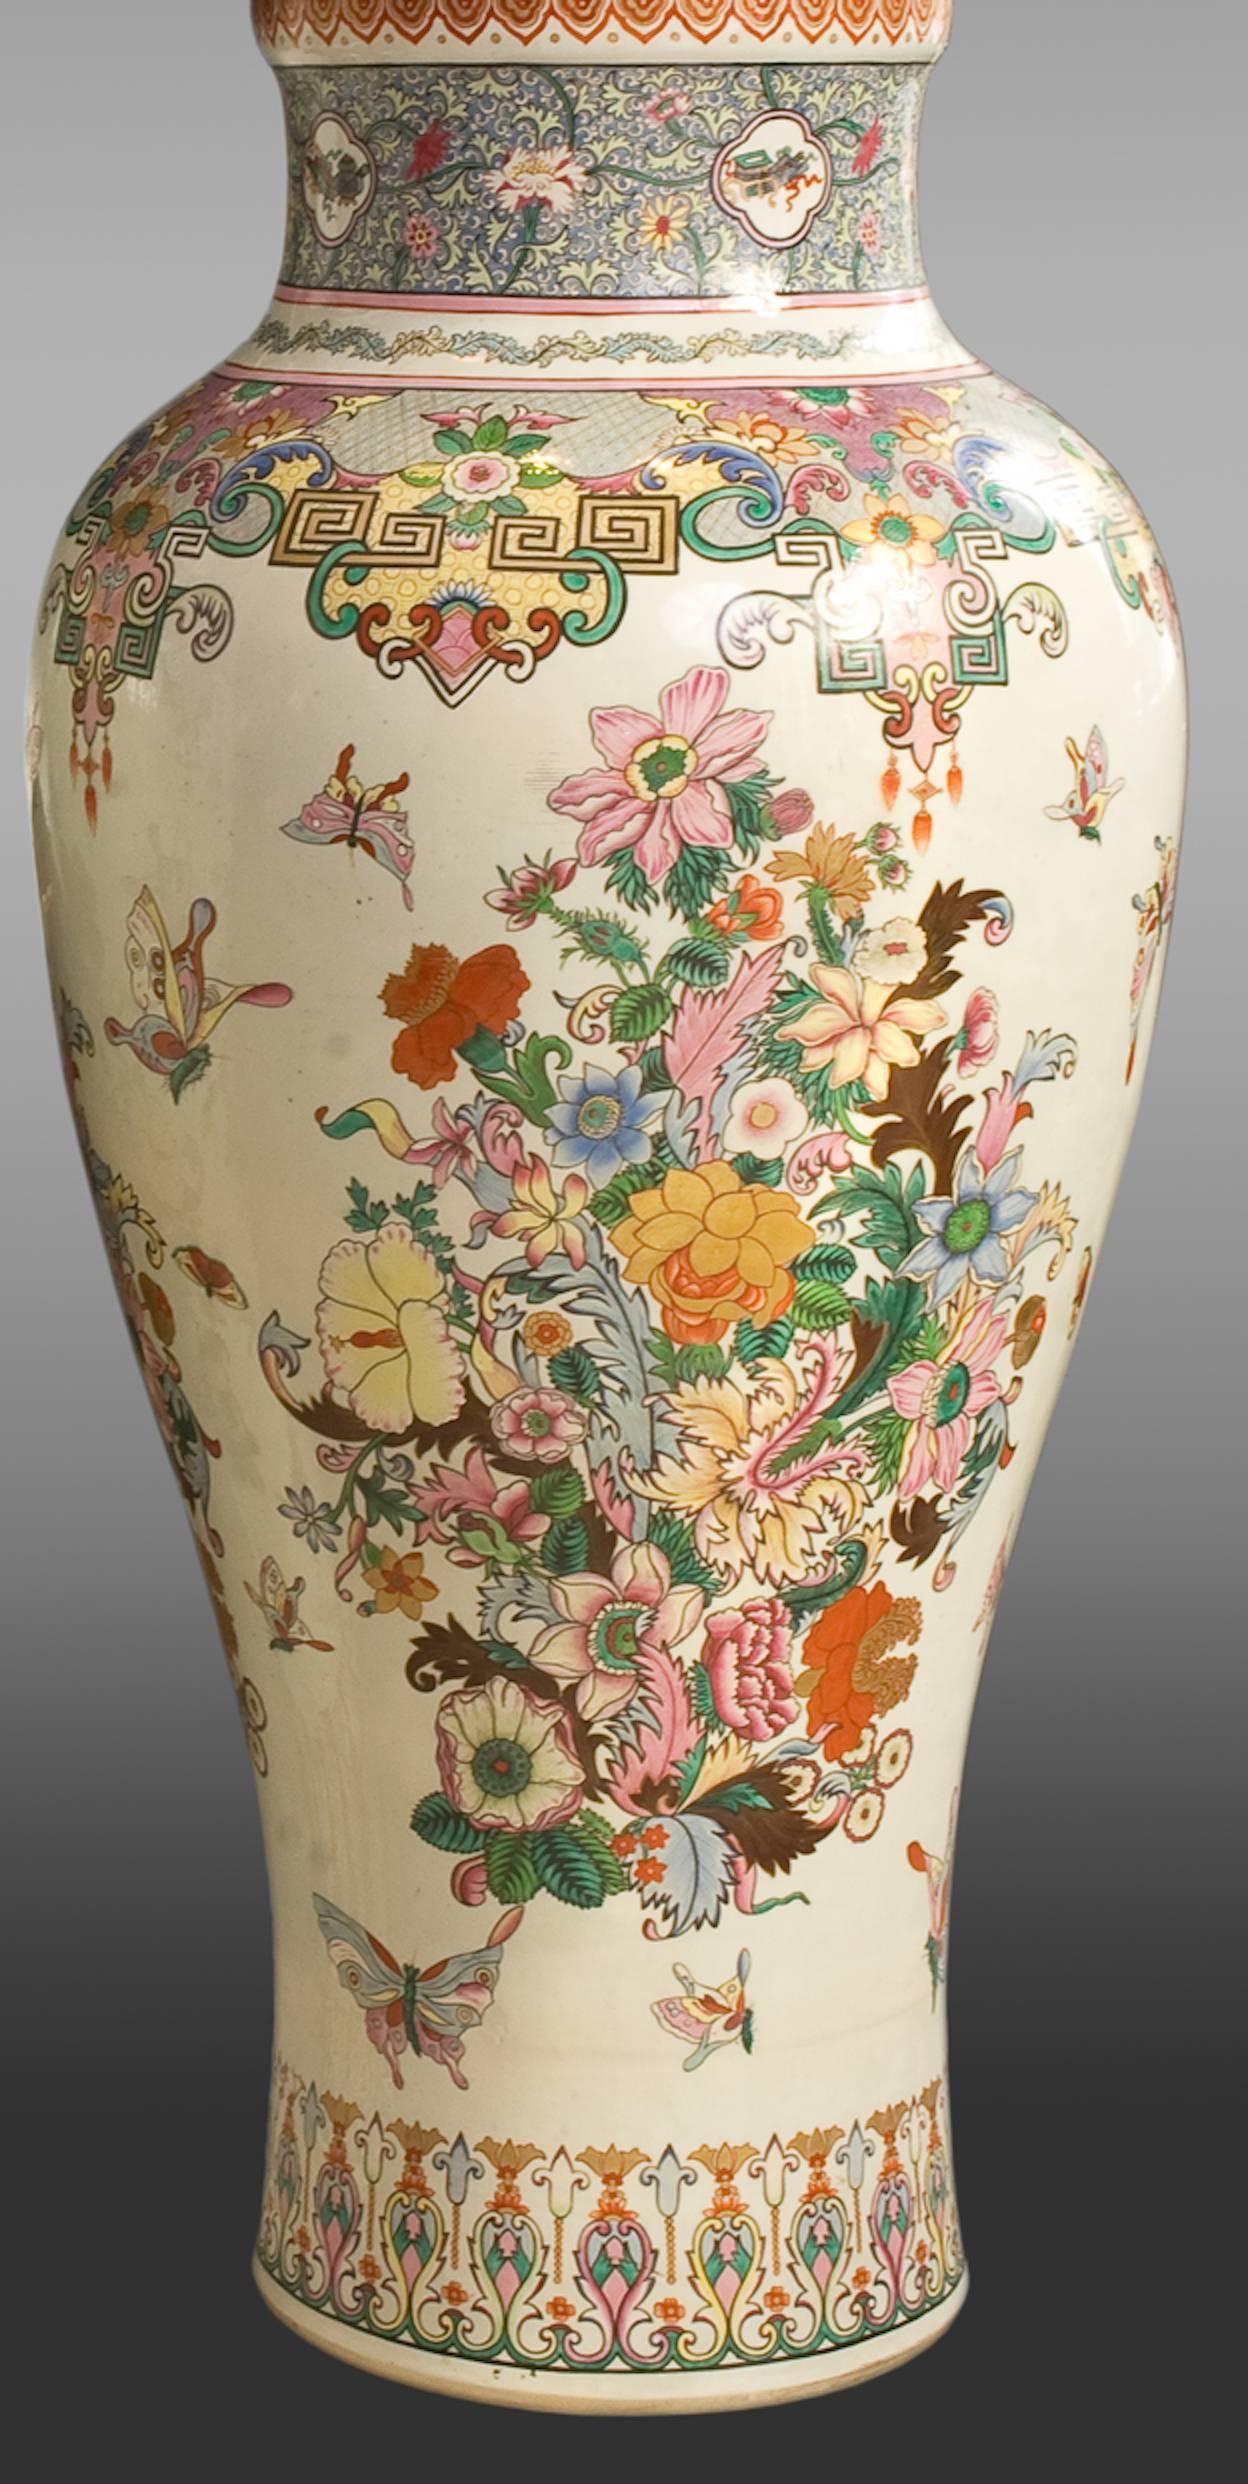 Samson Porzellan Vasen und Deckel
Ende des 19. Jahrhunderts
Außergewöhnliche Größe.
Dekoration 